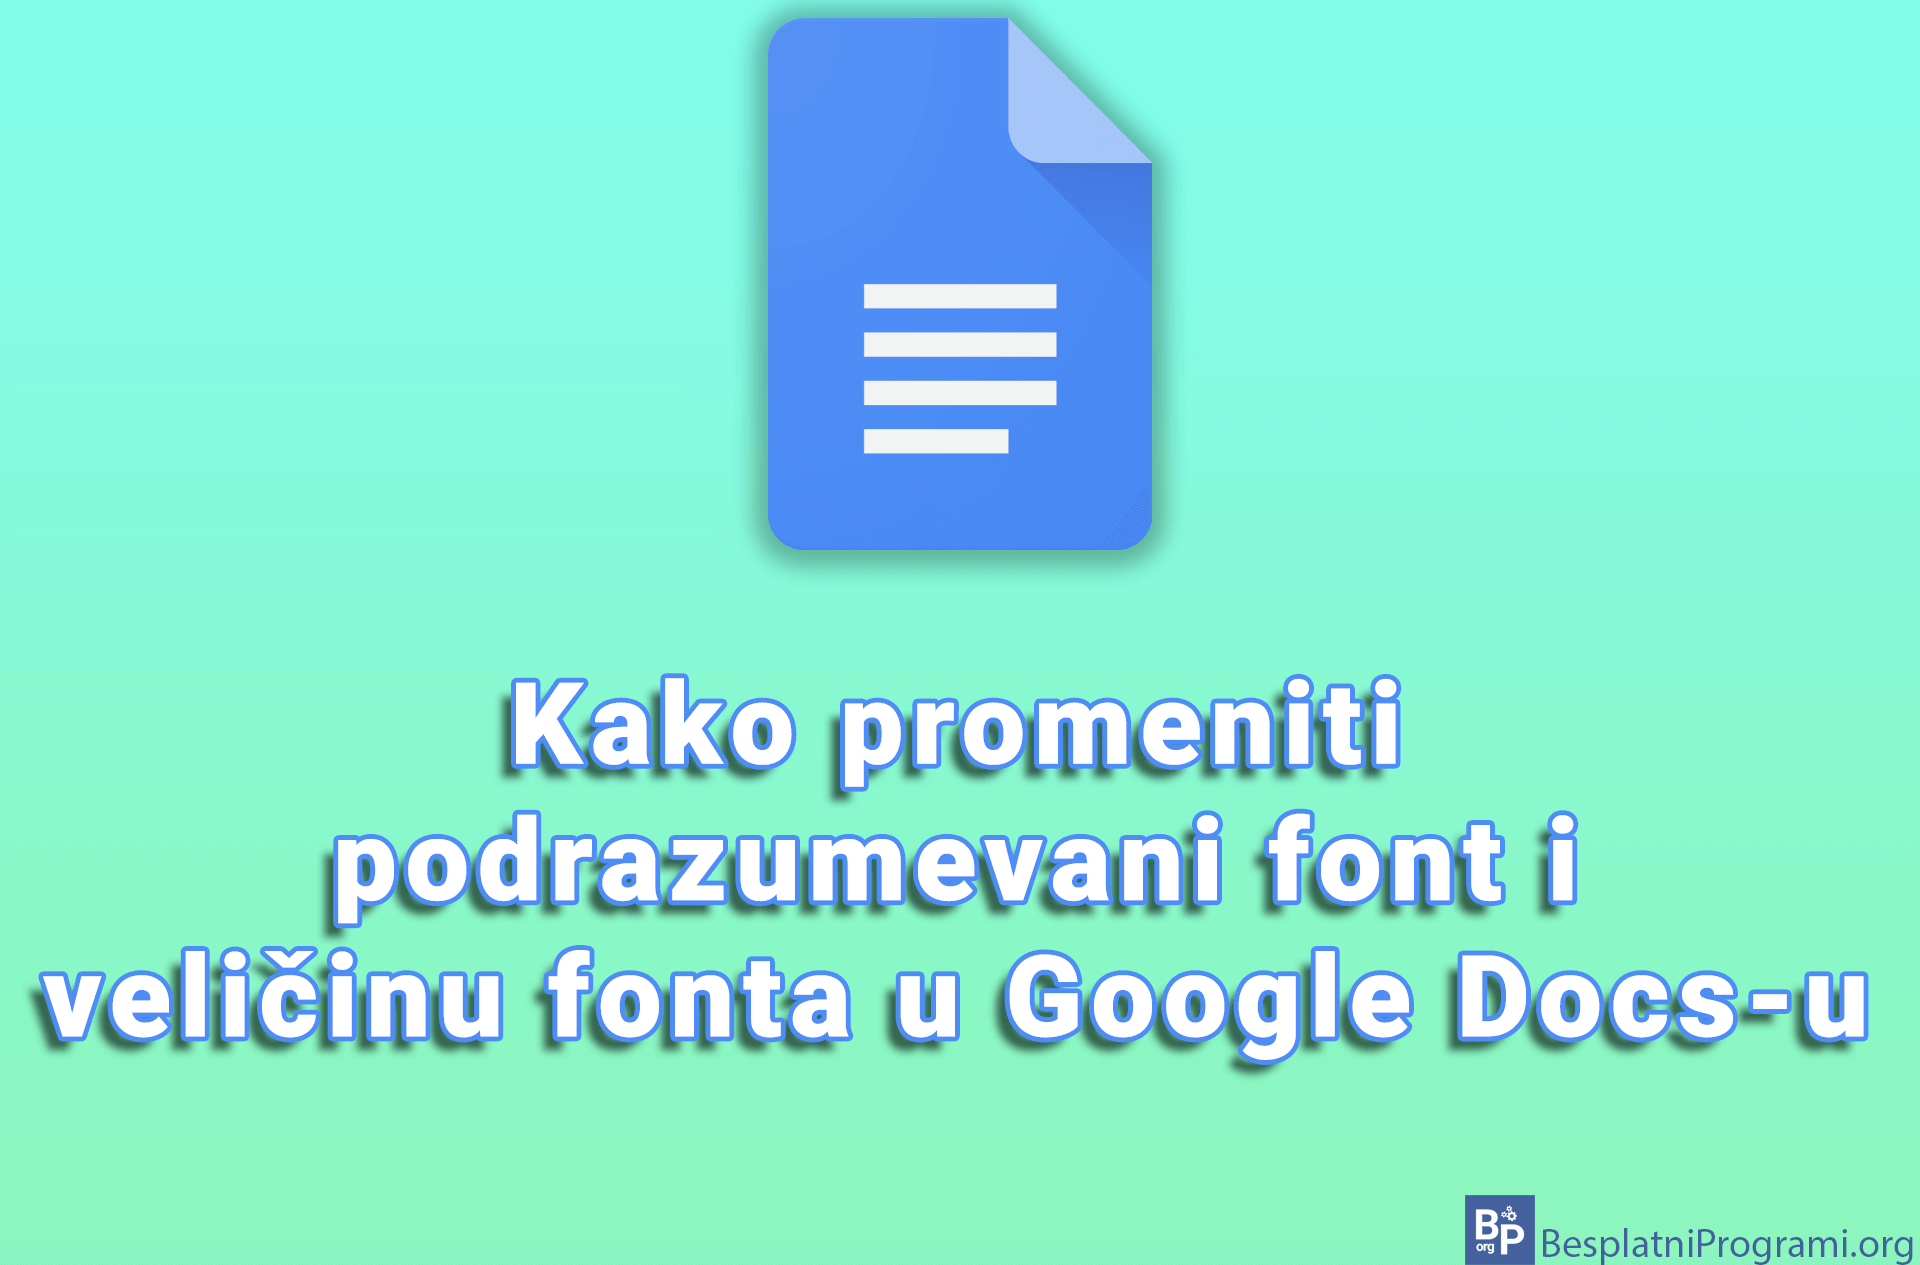 Kako promeniti podrazumevani font i veličinu fonta u Google Docs-u